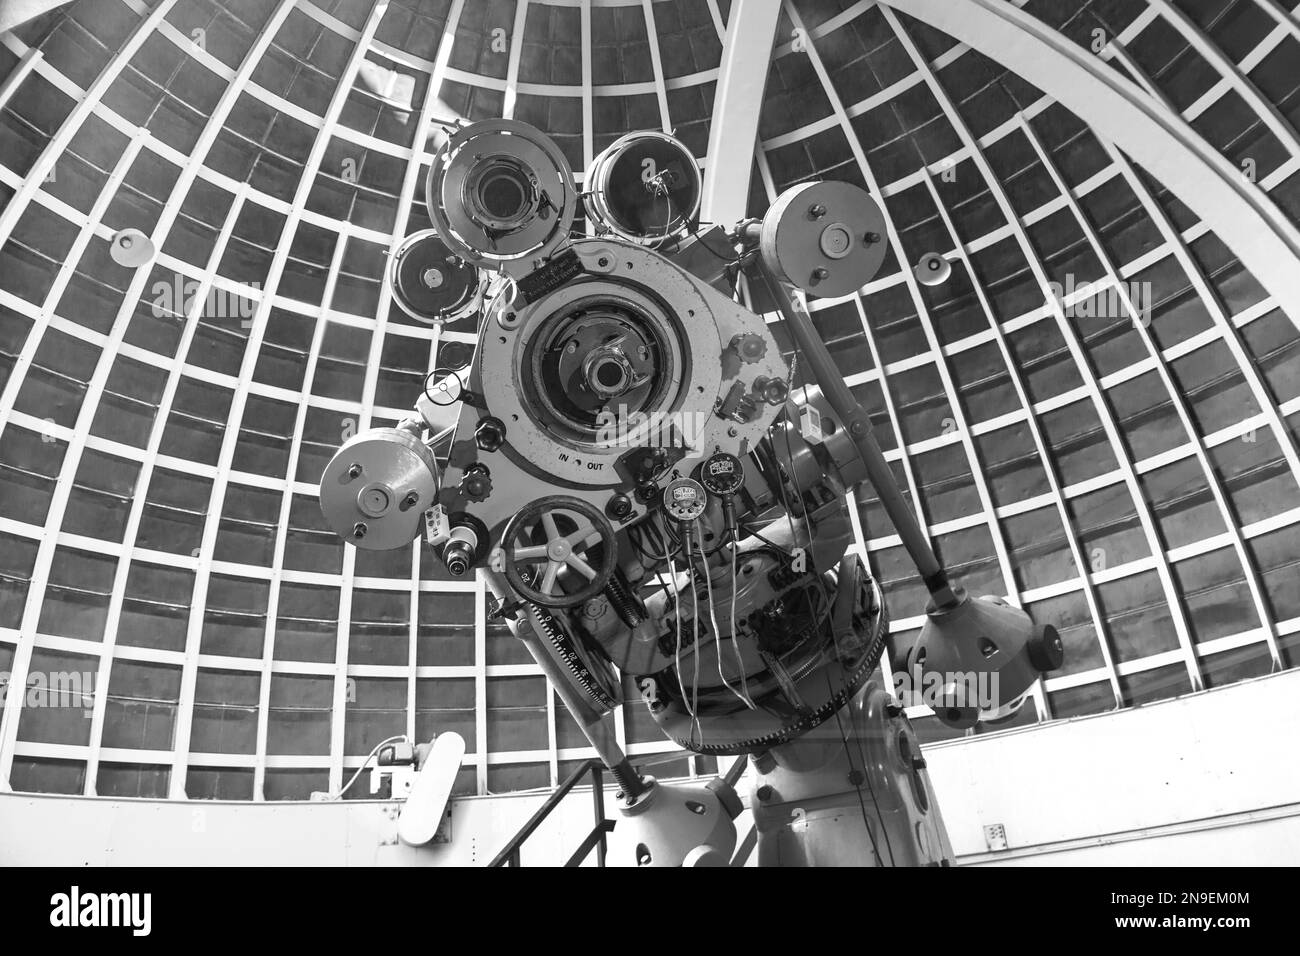 Los Angeles, USA - 10 giugno 2012: La gente visita il museo dell'osservatorio Griffith a Los Angeles, USA. I rifrattori Zeiss di Griffith Observato Foto Stock